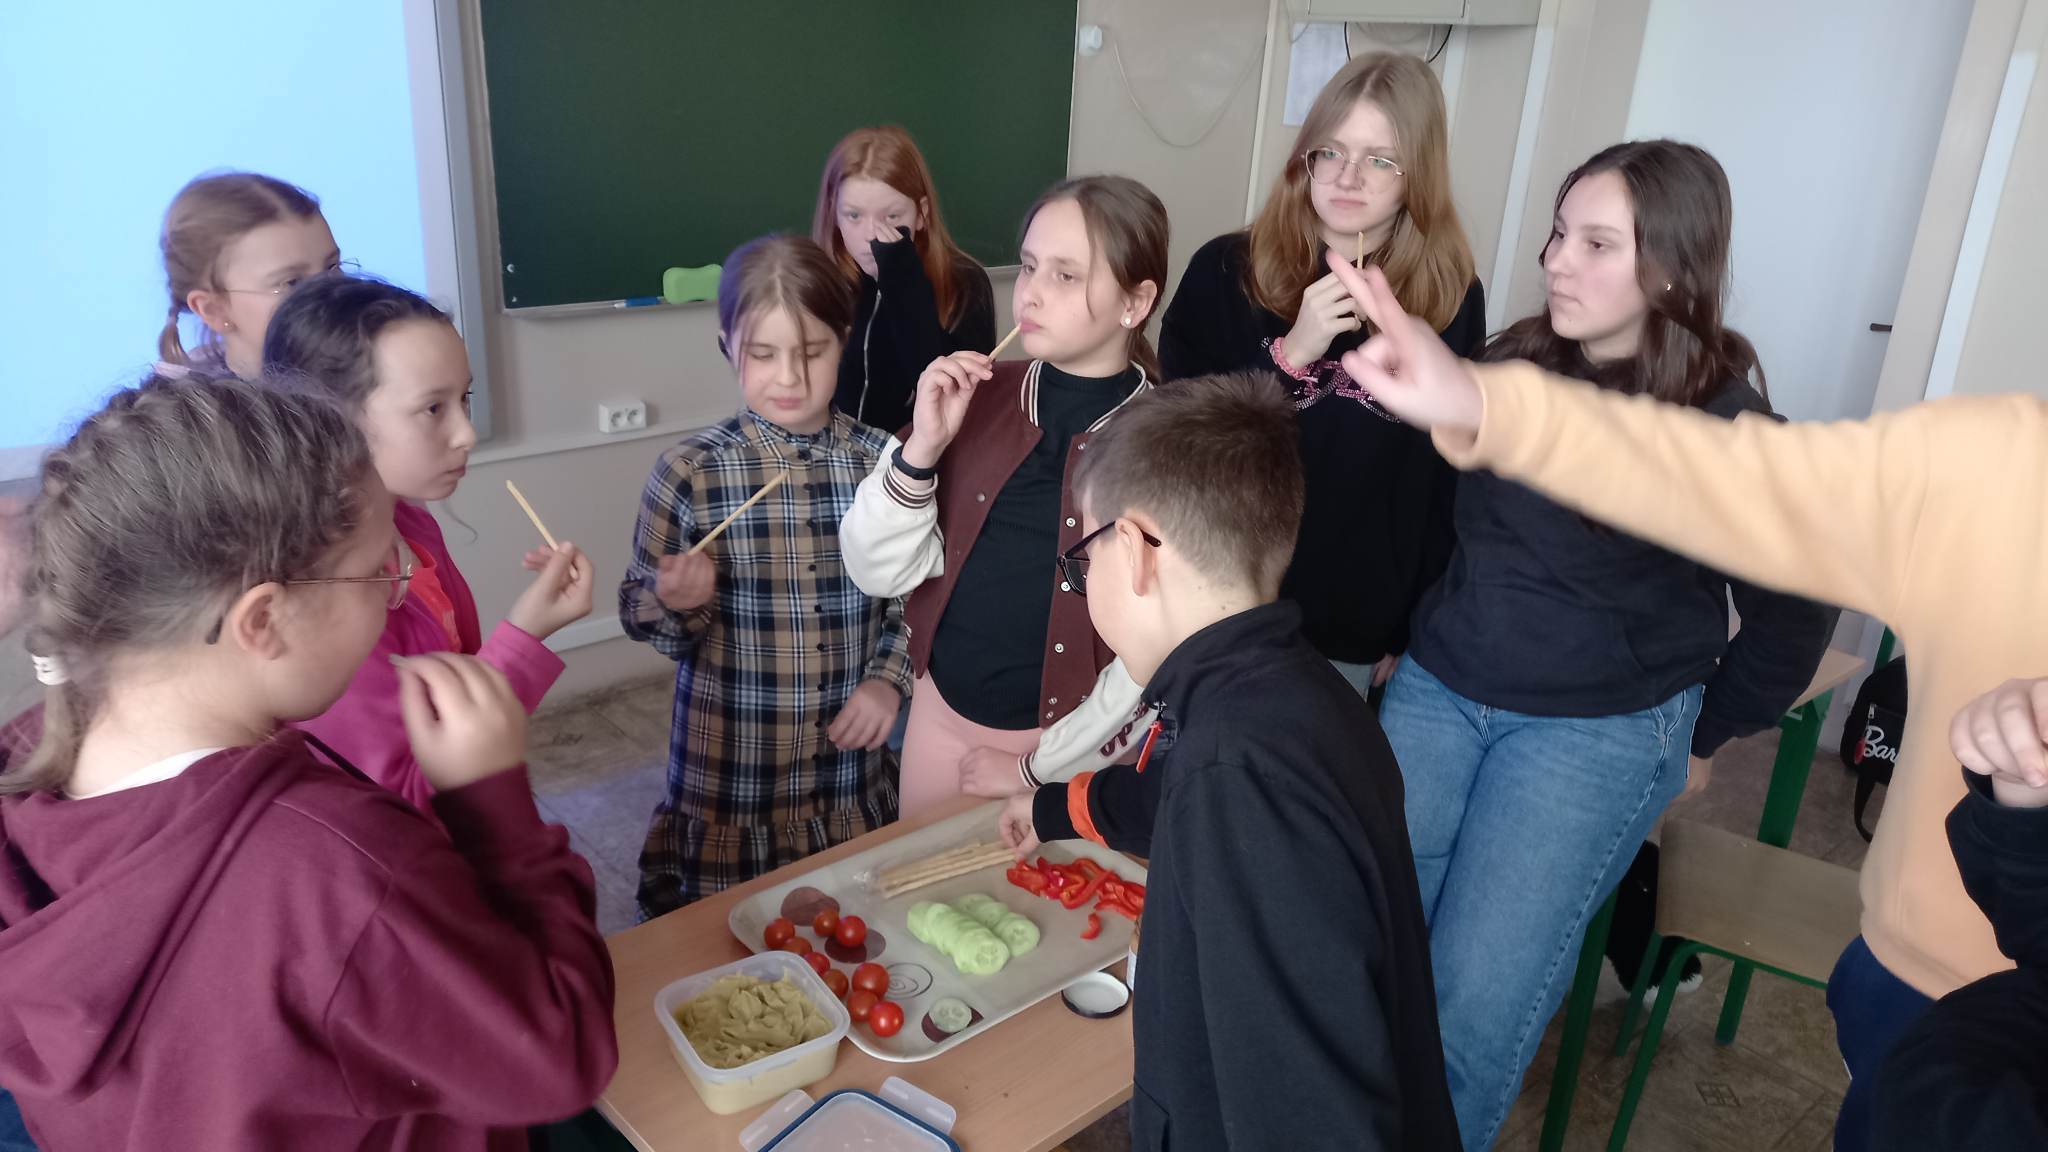 Na zdjęciu widać uczniów stojących w sali lekcyjnej wokół stolika, na którym znajdują się warzywa, hummus i paluszki grissini. Uczniowie degustują przysmaki.